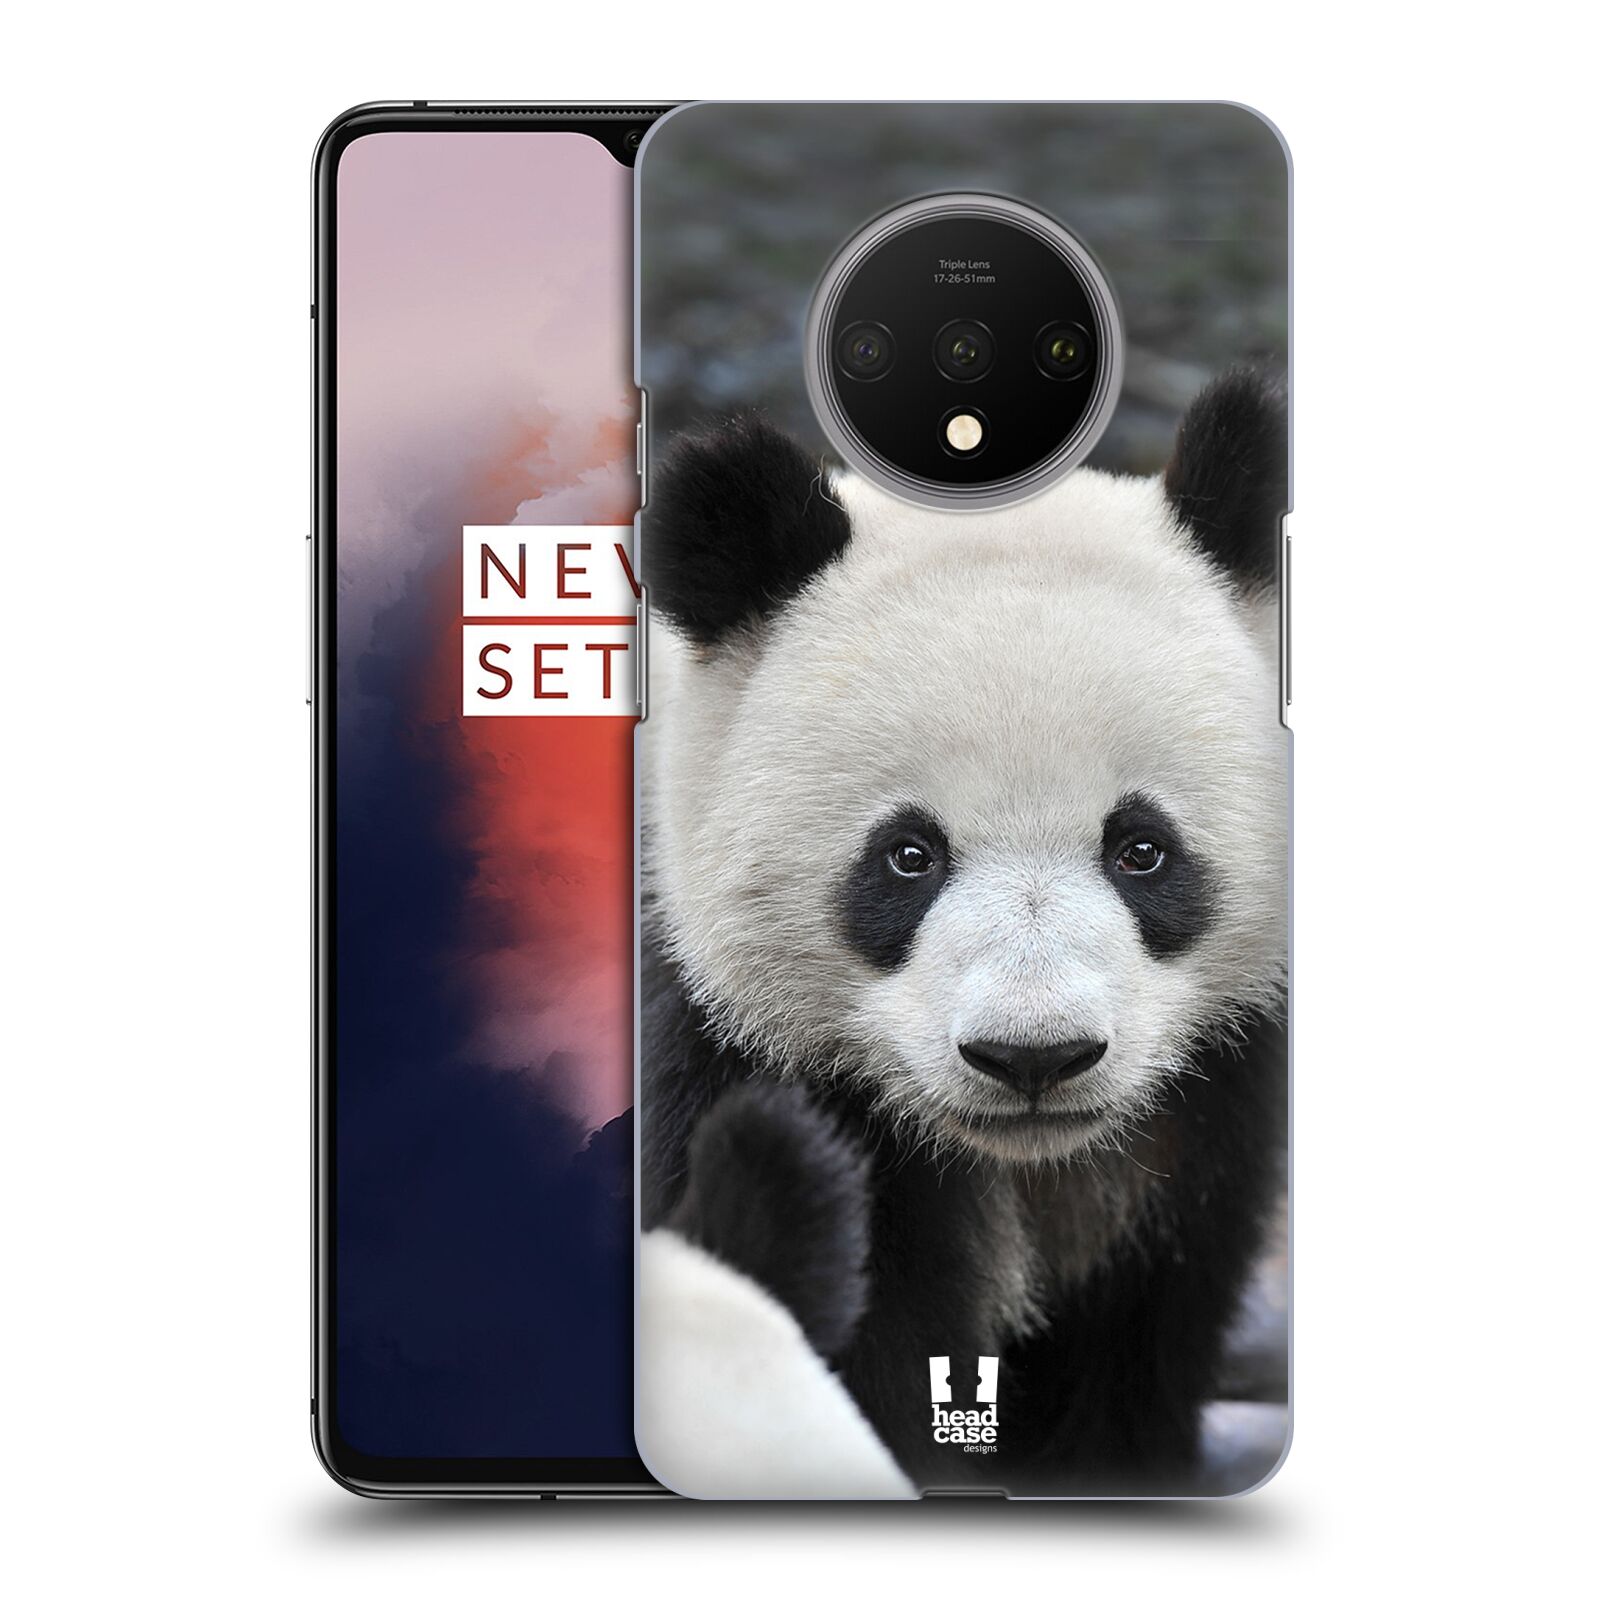 Zadní obal pro mobil OnePlus 7T - HEAD CASE - Svět zvířat medvěd panda